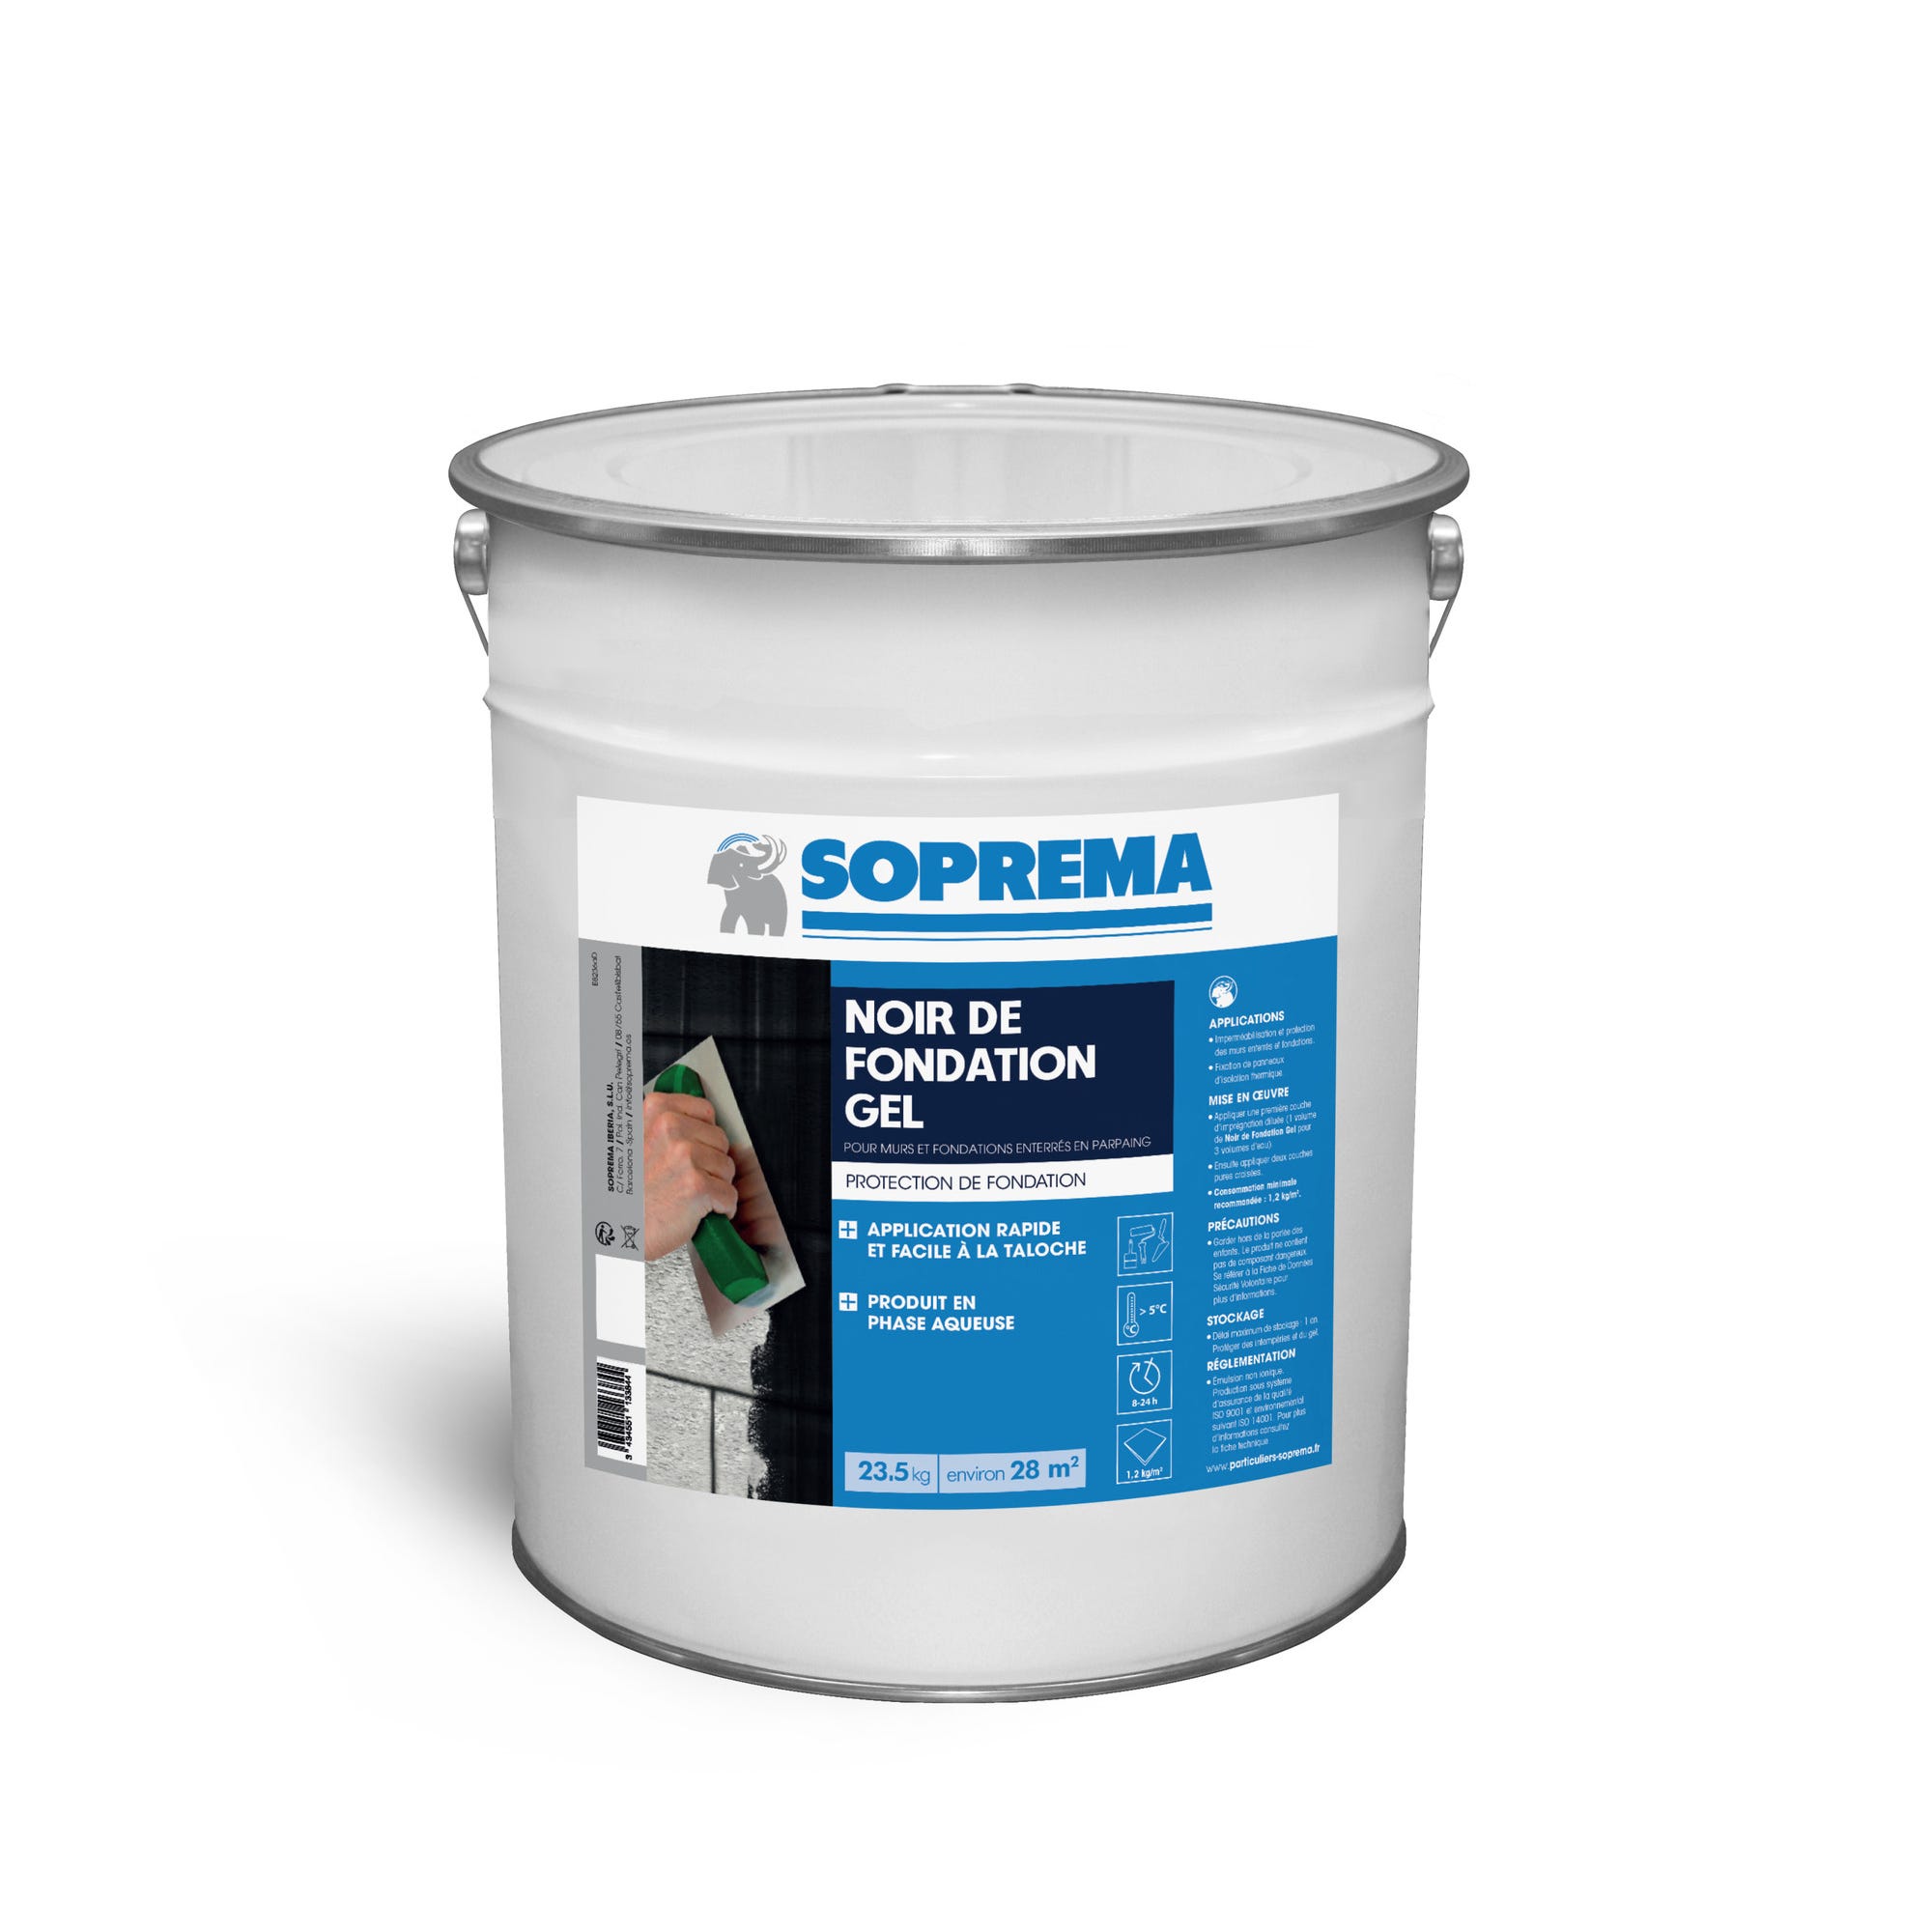 Imperméabilisant pour protection de fondation gel 23,5kg - SOPREMA 0